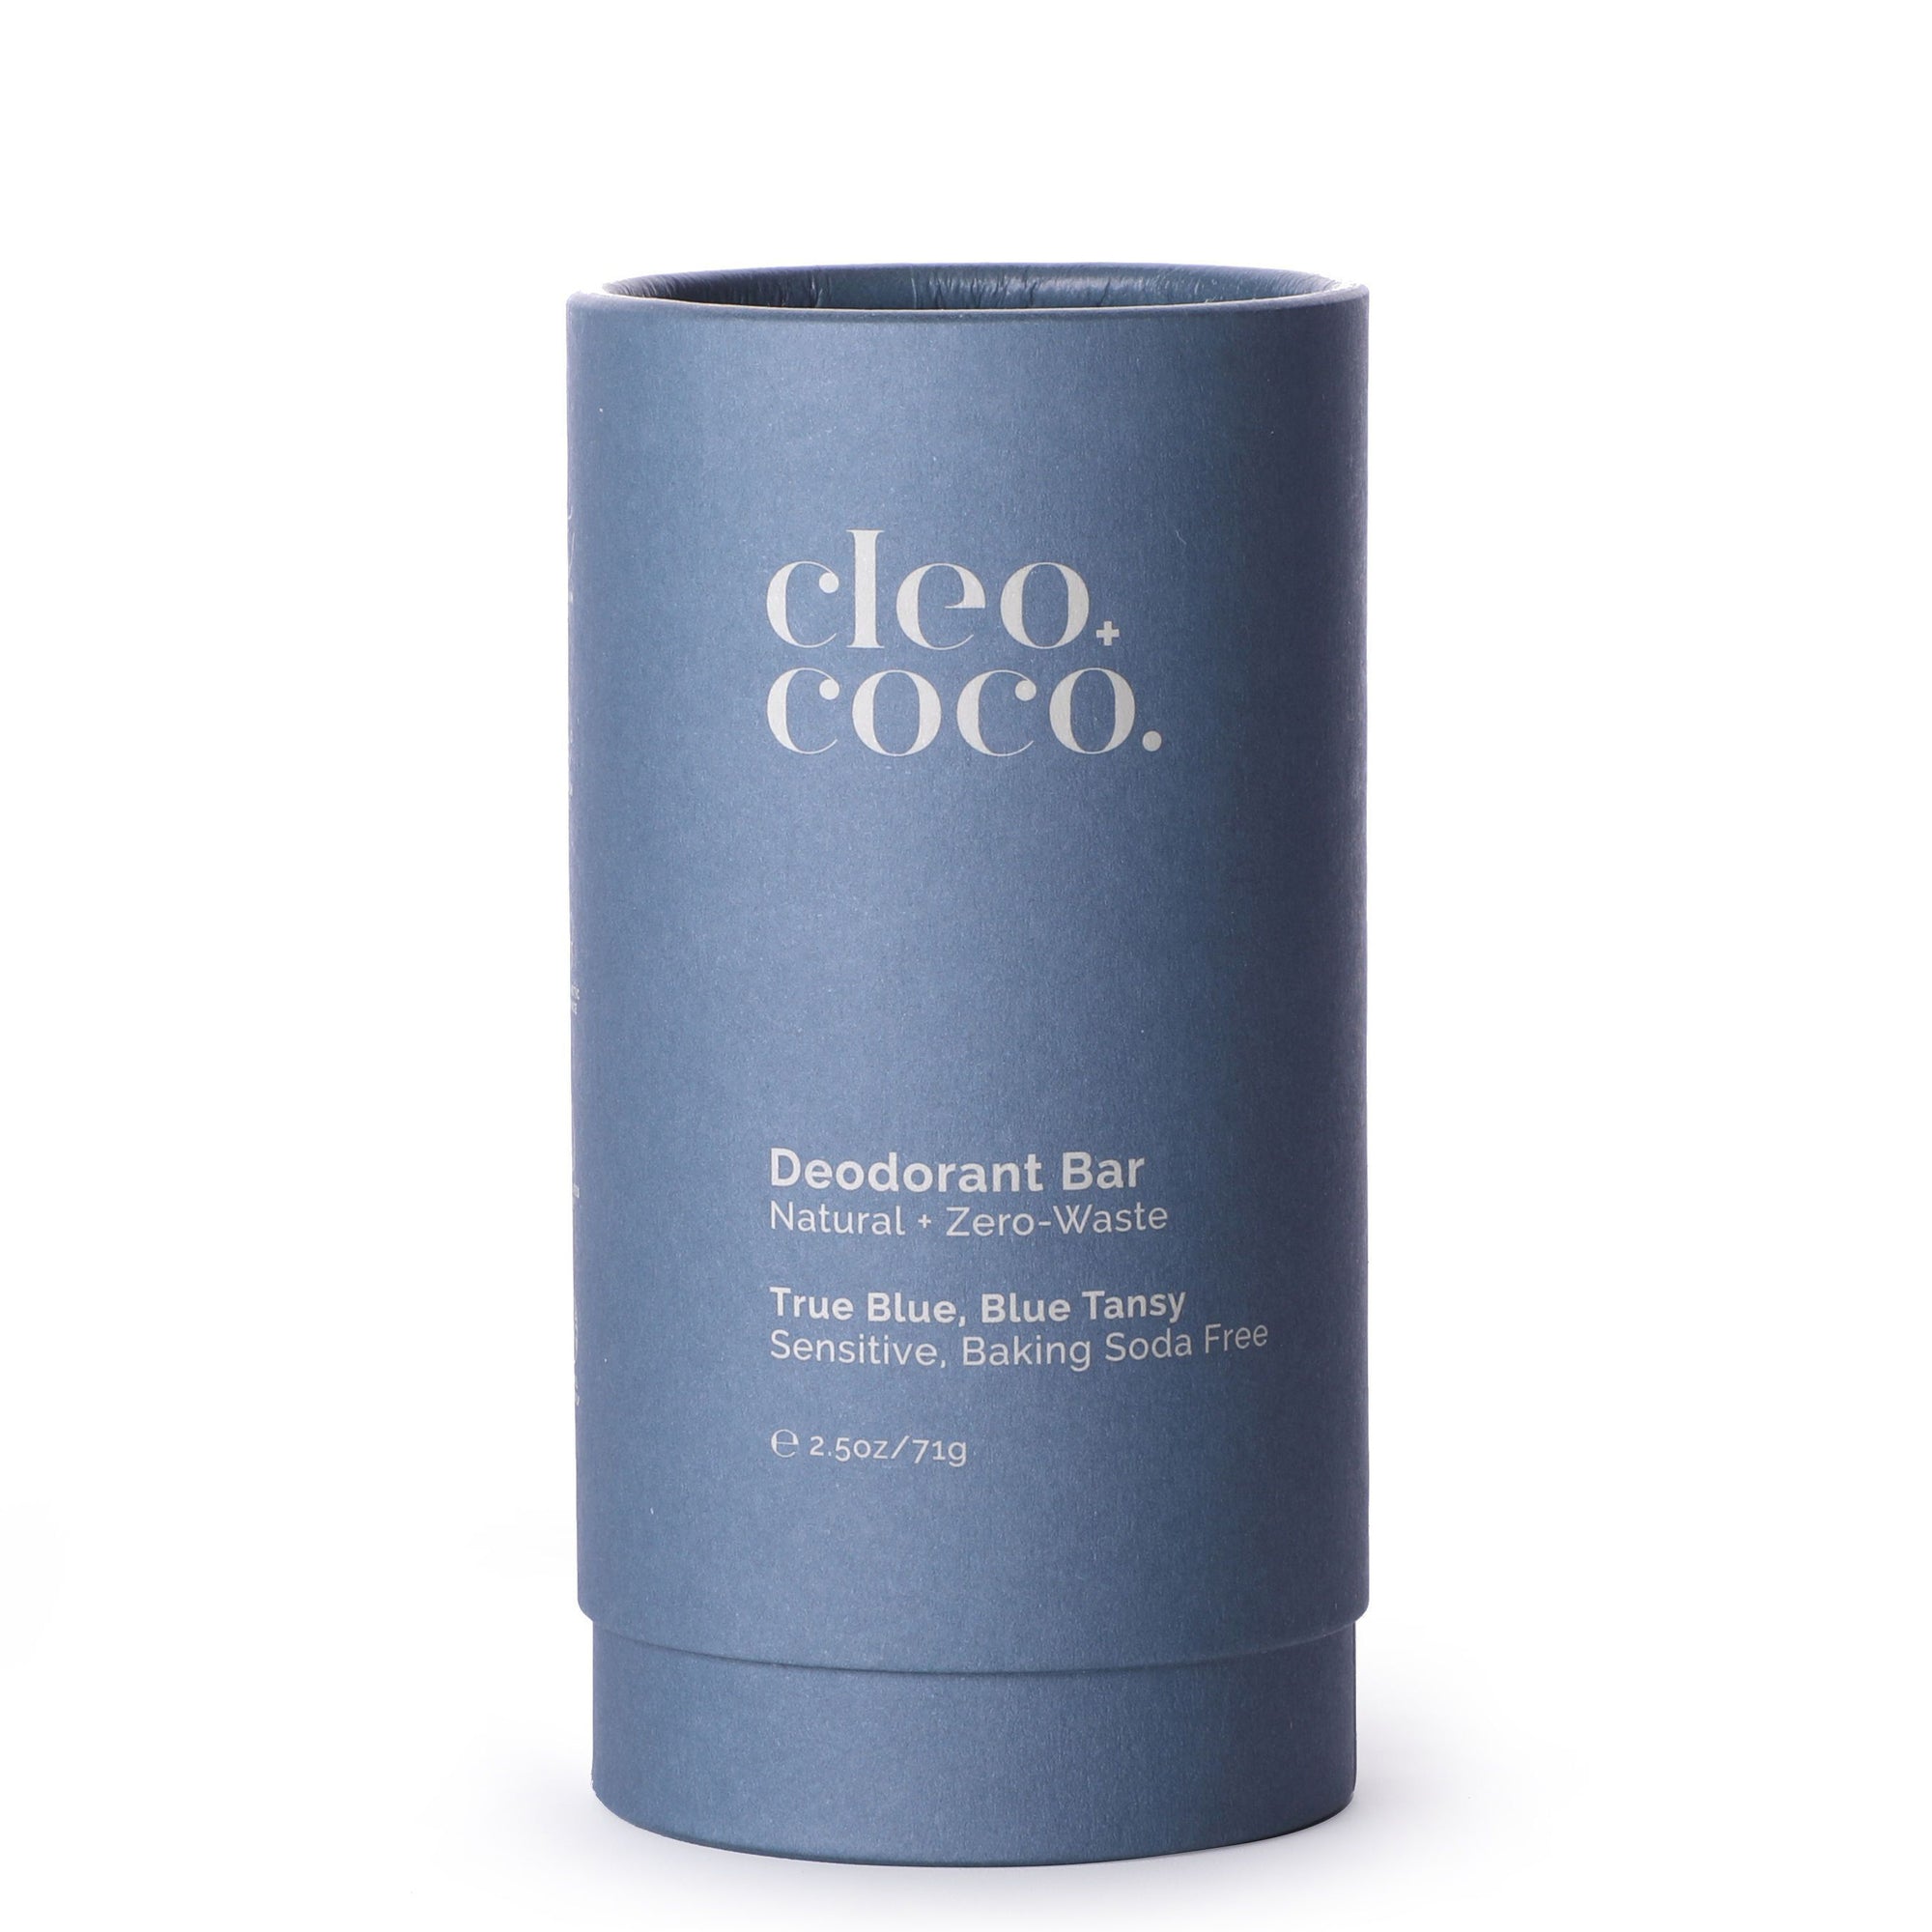 Deodorant Bar Zero-Waste, Sensitive - True Blue, Blue Tansy